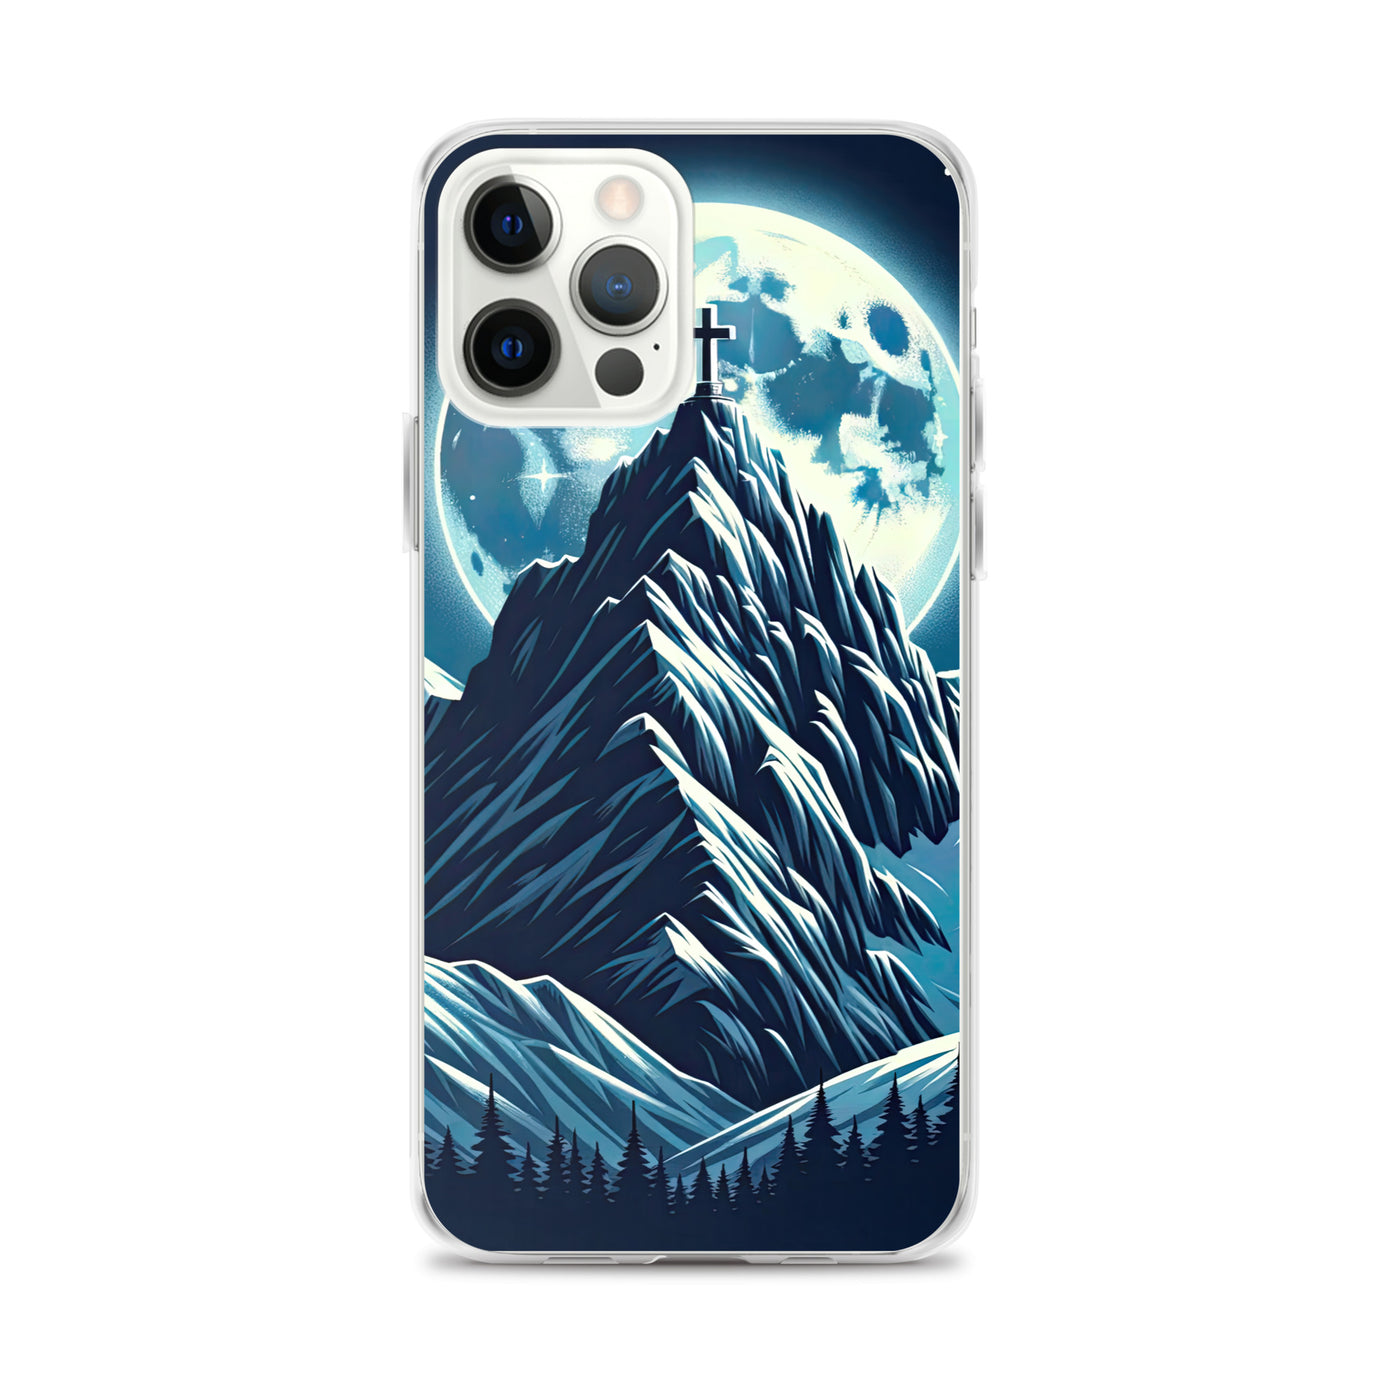 Mondnacht und Gipfelkreuz in den Alpen, glitzernde Schneegipfel - iPhone Schutzhülle (durchsichtig) berge xxx yyy zzz iPhone 12 Pro Max